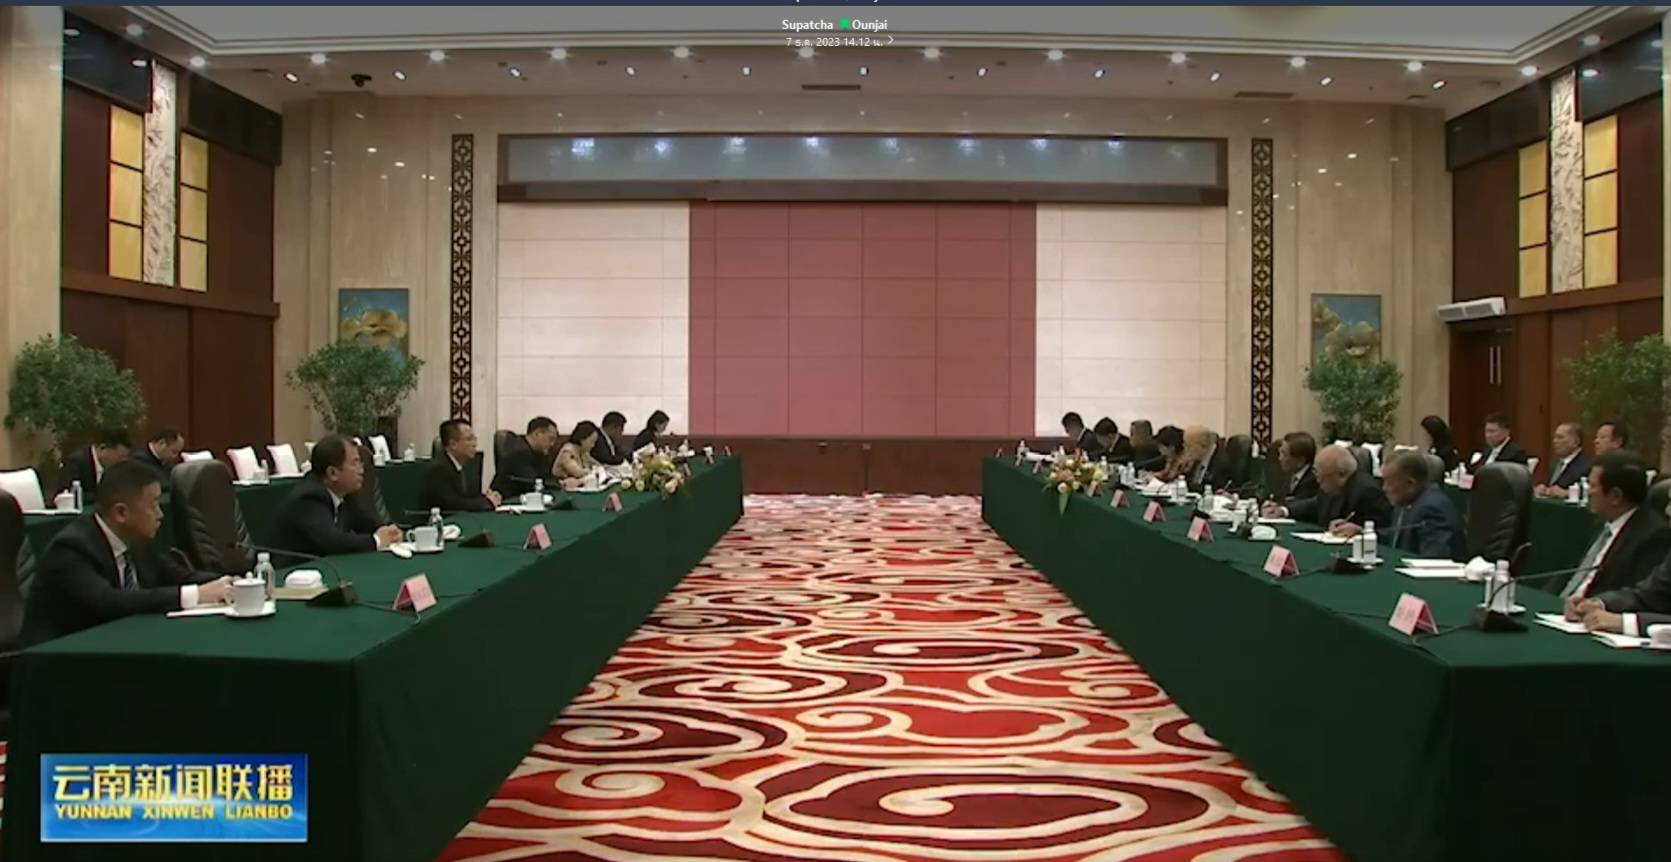 การประชุมทวิภาคีและไปเยือนต่างประเทศของคณะกรรมาธิการกิจการองค์กรอิสระตามรัฐธรรมนูญ ณ สาธารณรัฐประชาชนจีน (3 - 7 ธันวาคม 2566)